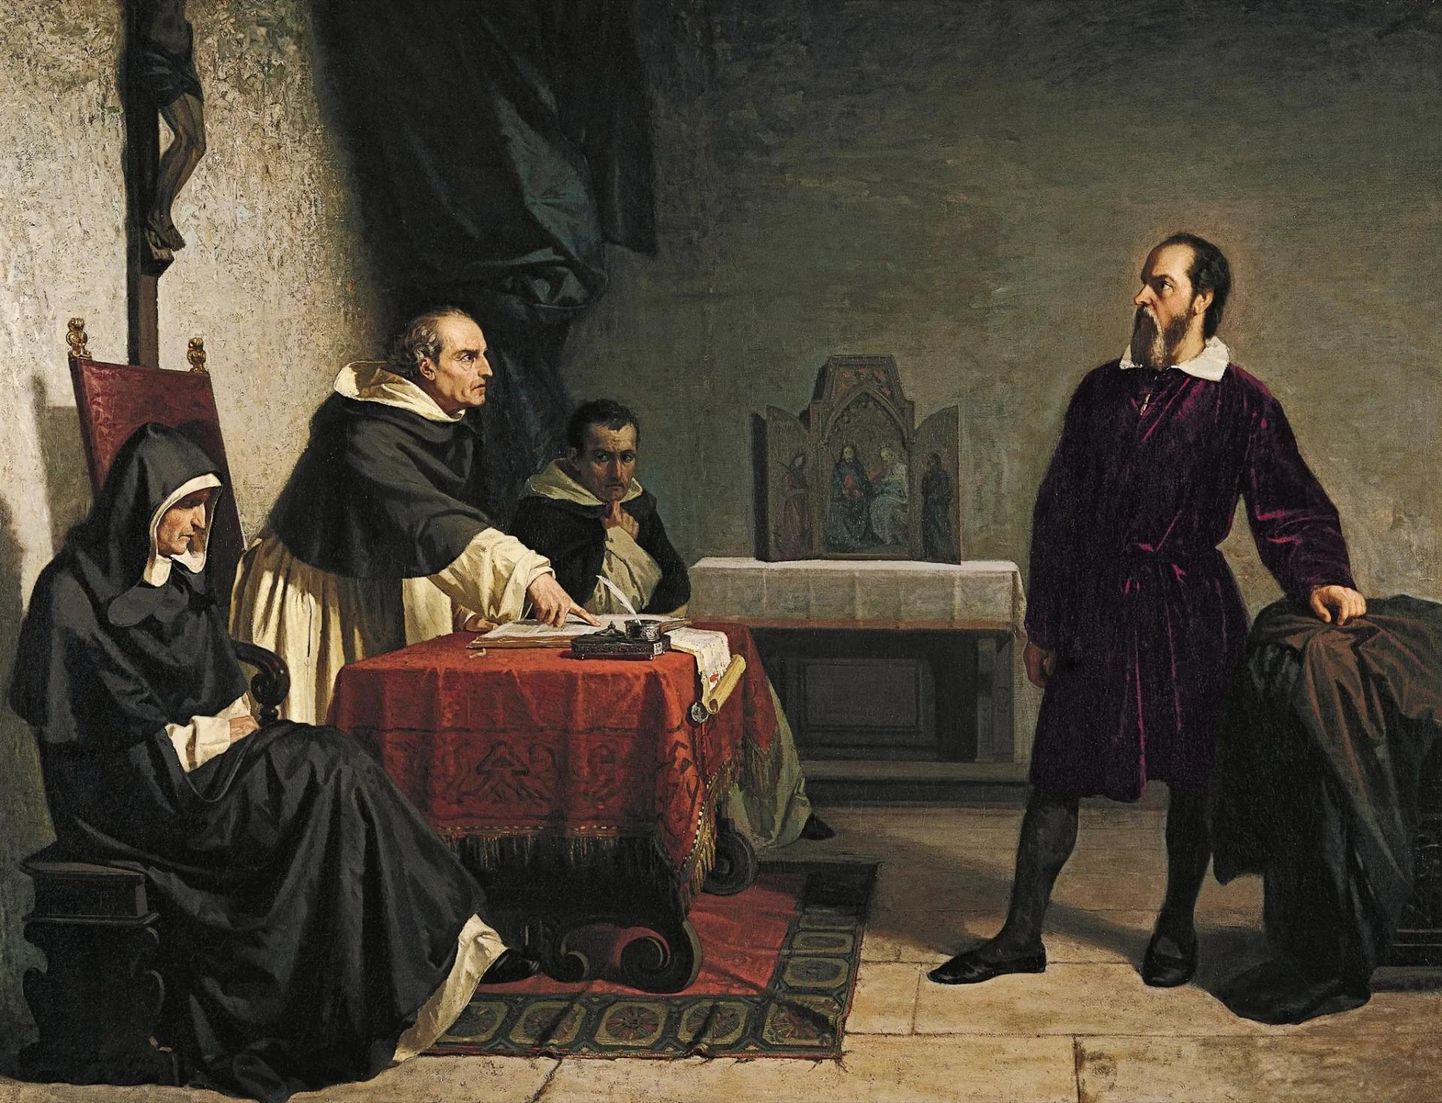 Kunstniku nägemus Galileo Galileist inkvisitsioonikohtu ees.
Cristiano Banti (1824–1904) õlimaal.